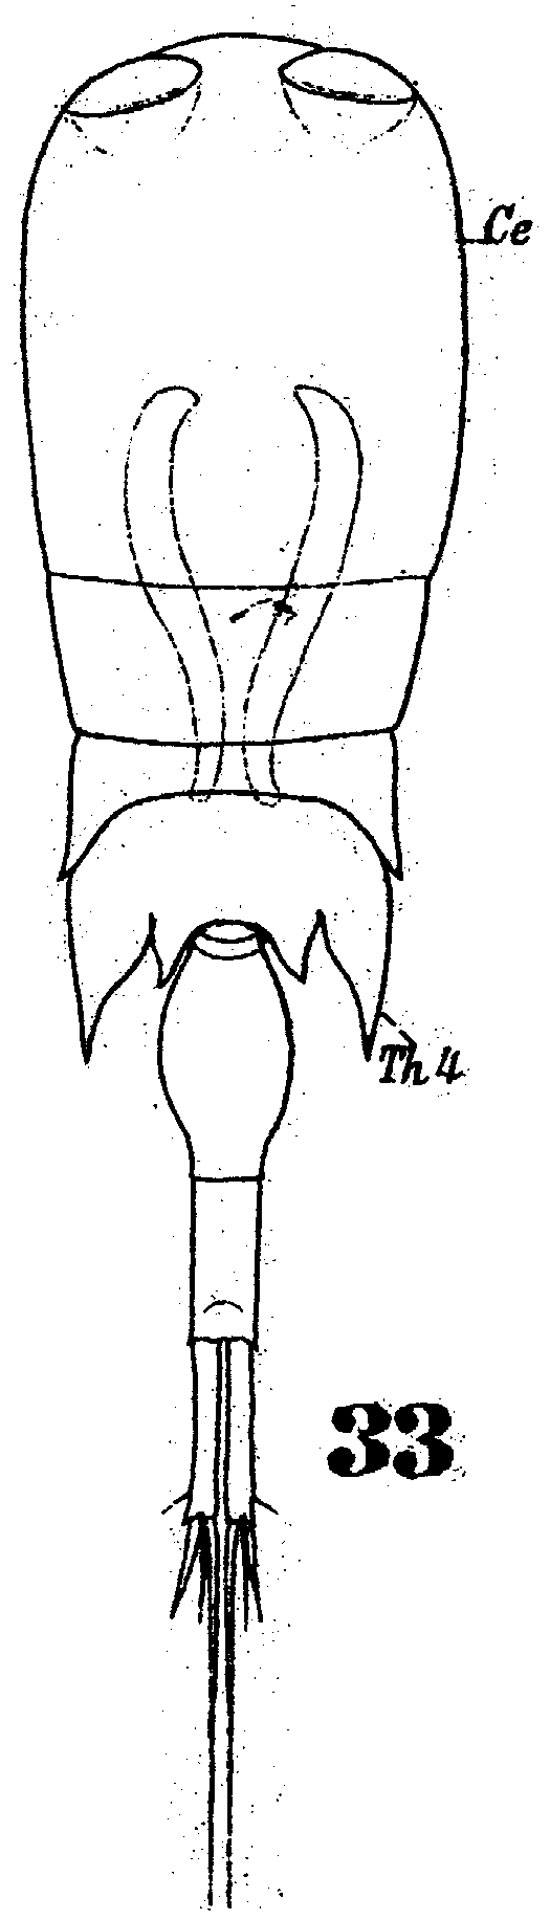 Espèce Corycaeus (Onychocorycaeus) giesbrechti - Planche 7 de figures morphologiques